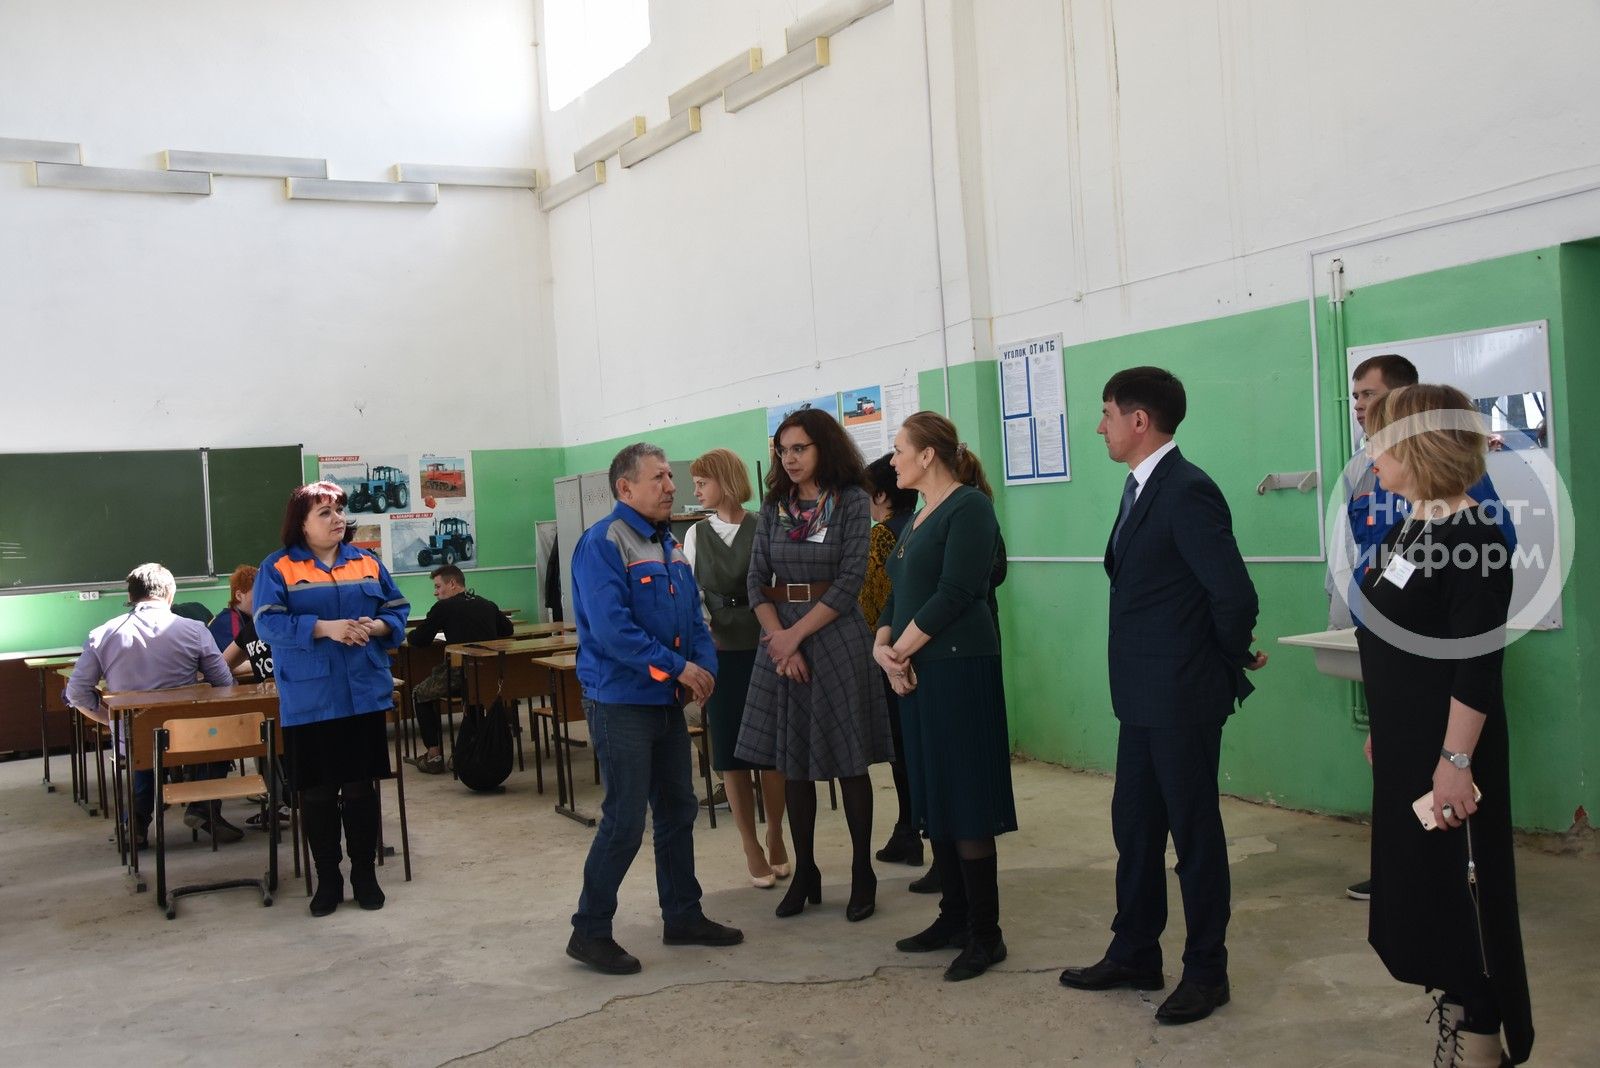 Нурлатские образовательные организации посетила замминистра образования и науки Татарстана Наталья Гречанникова